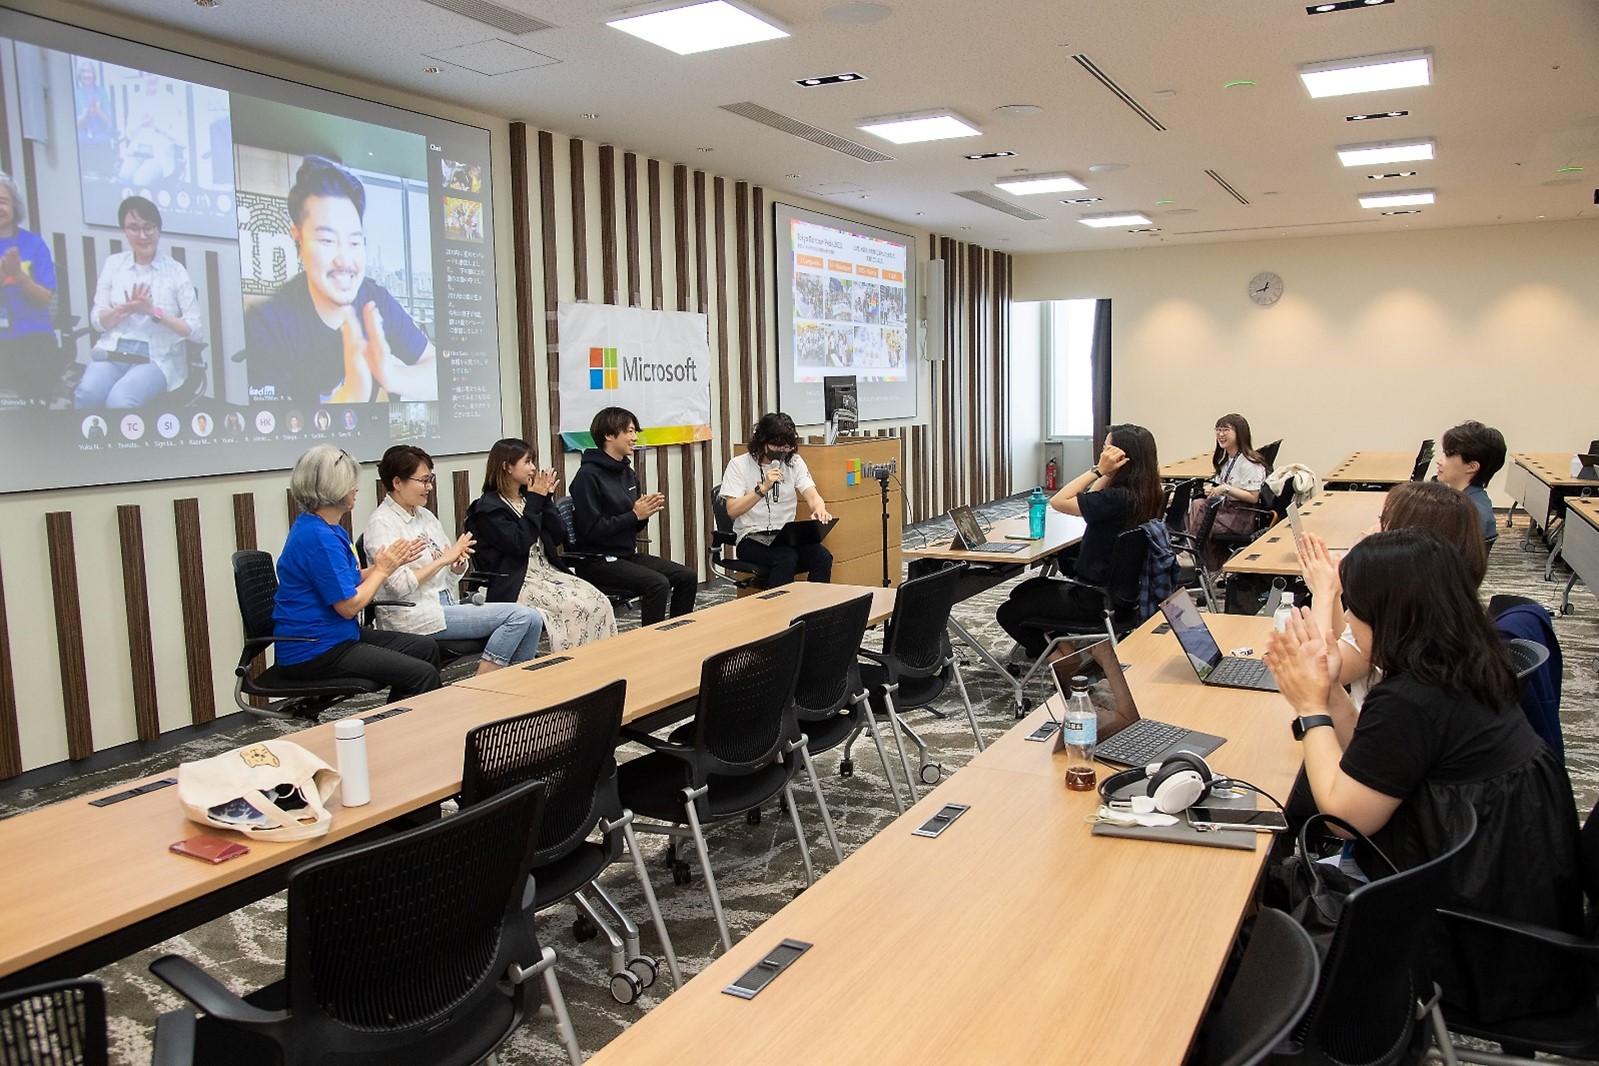 社内イベントでは、東京レインボープライド参加者が登壇し、様々な声を共有しました。